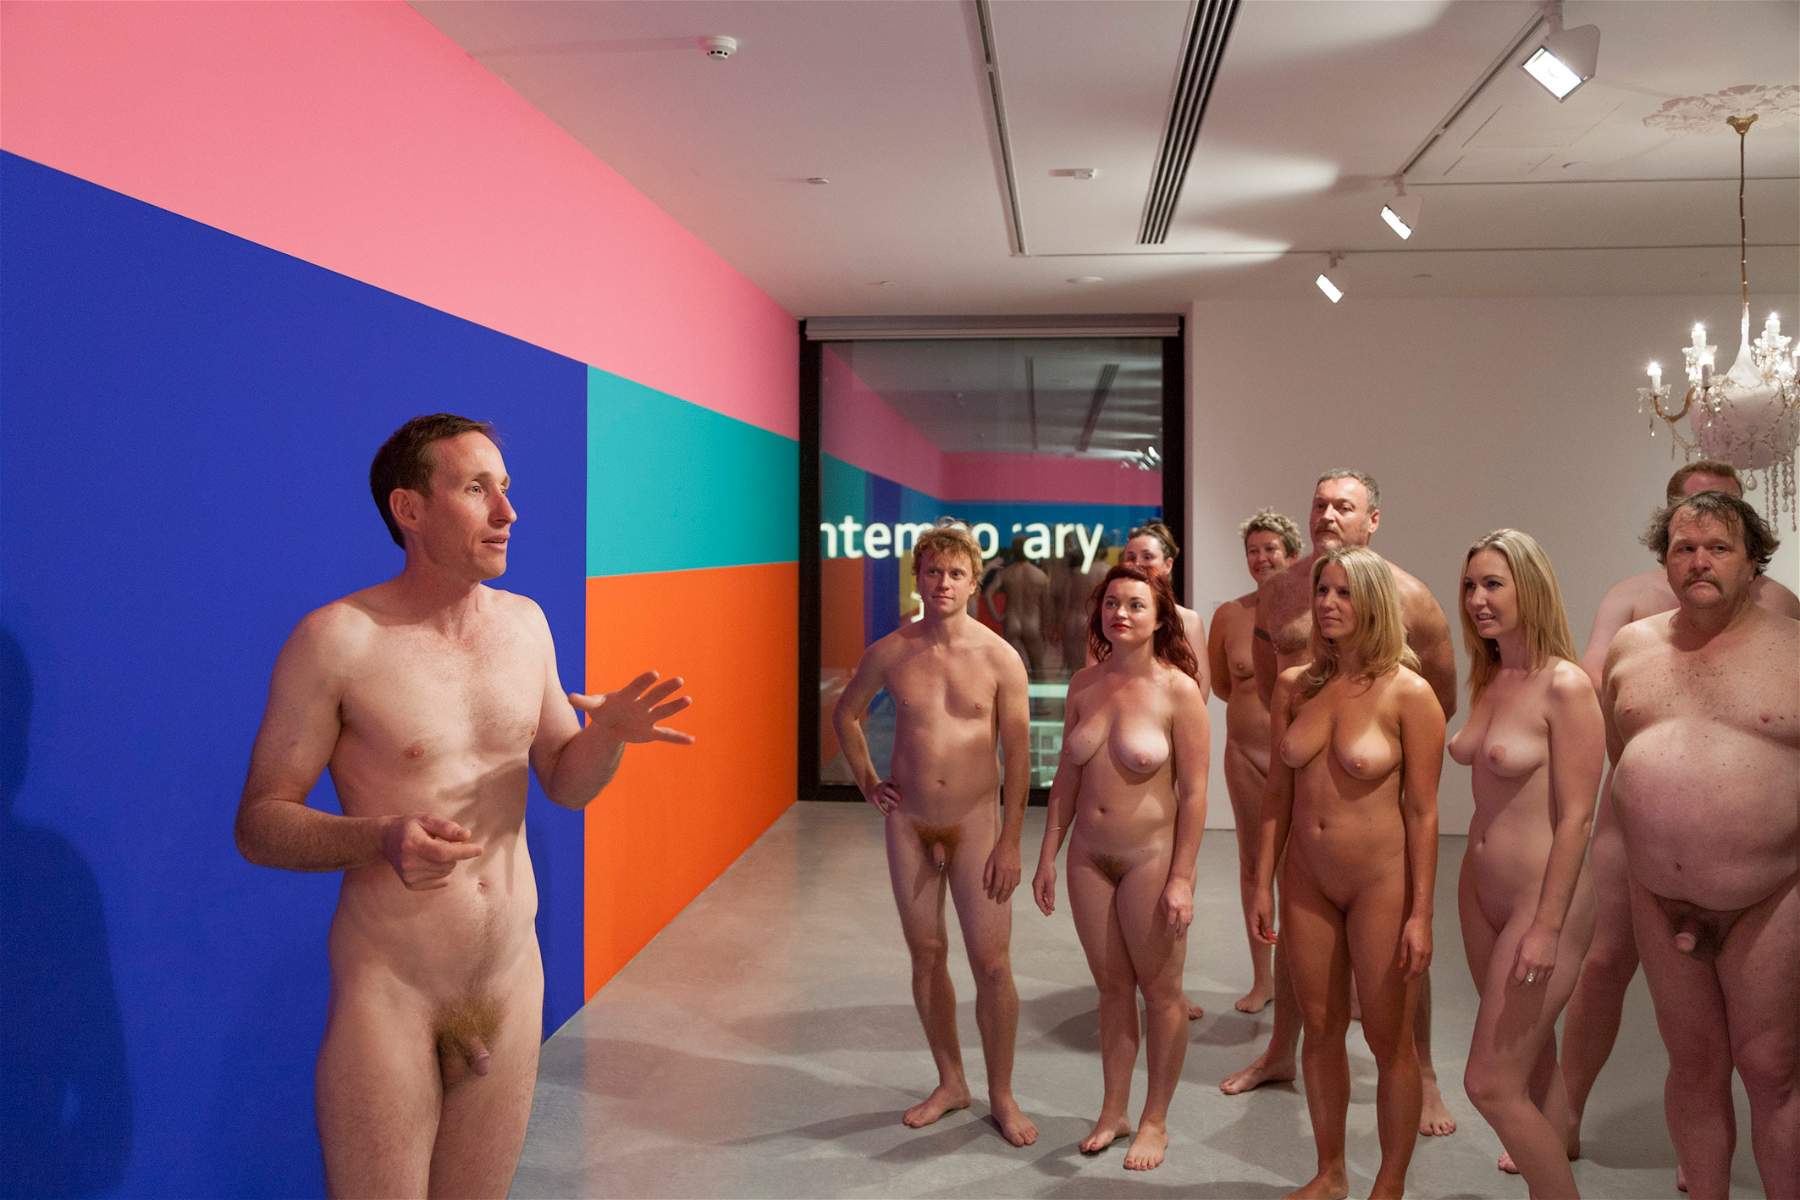 Nudi al museo: a Milano, per la prima volta in Italia, arriva una visita guidata nudista, aperta a tutti 